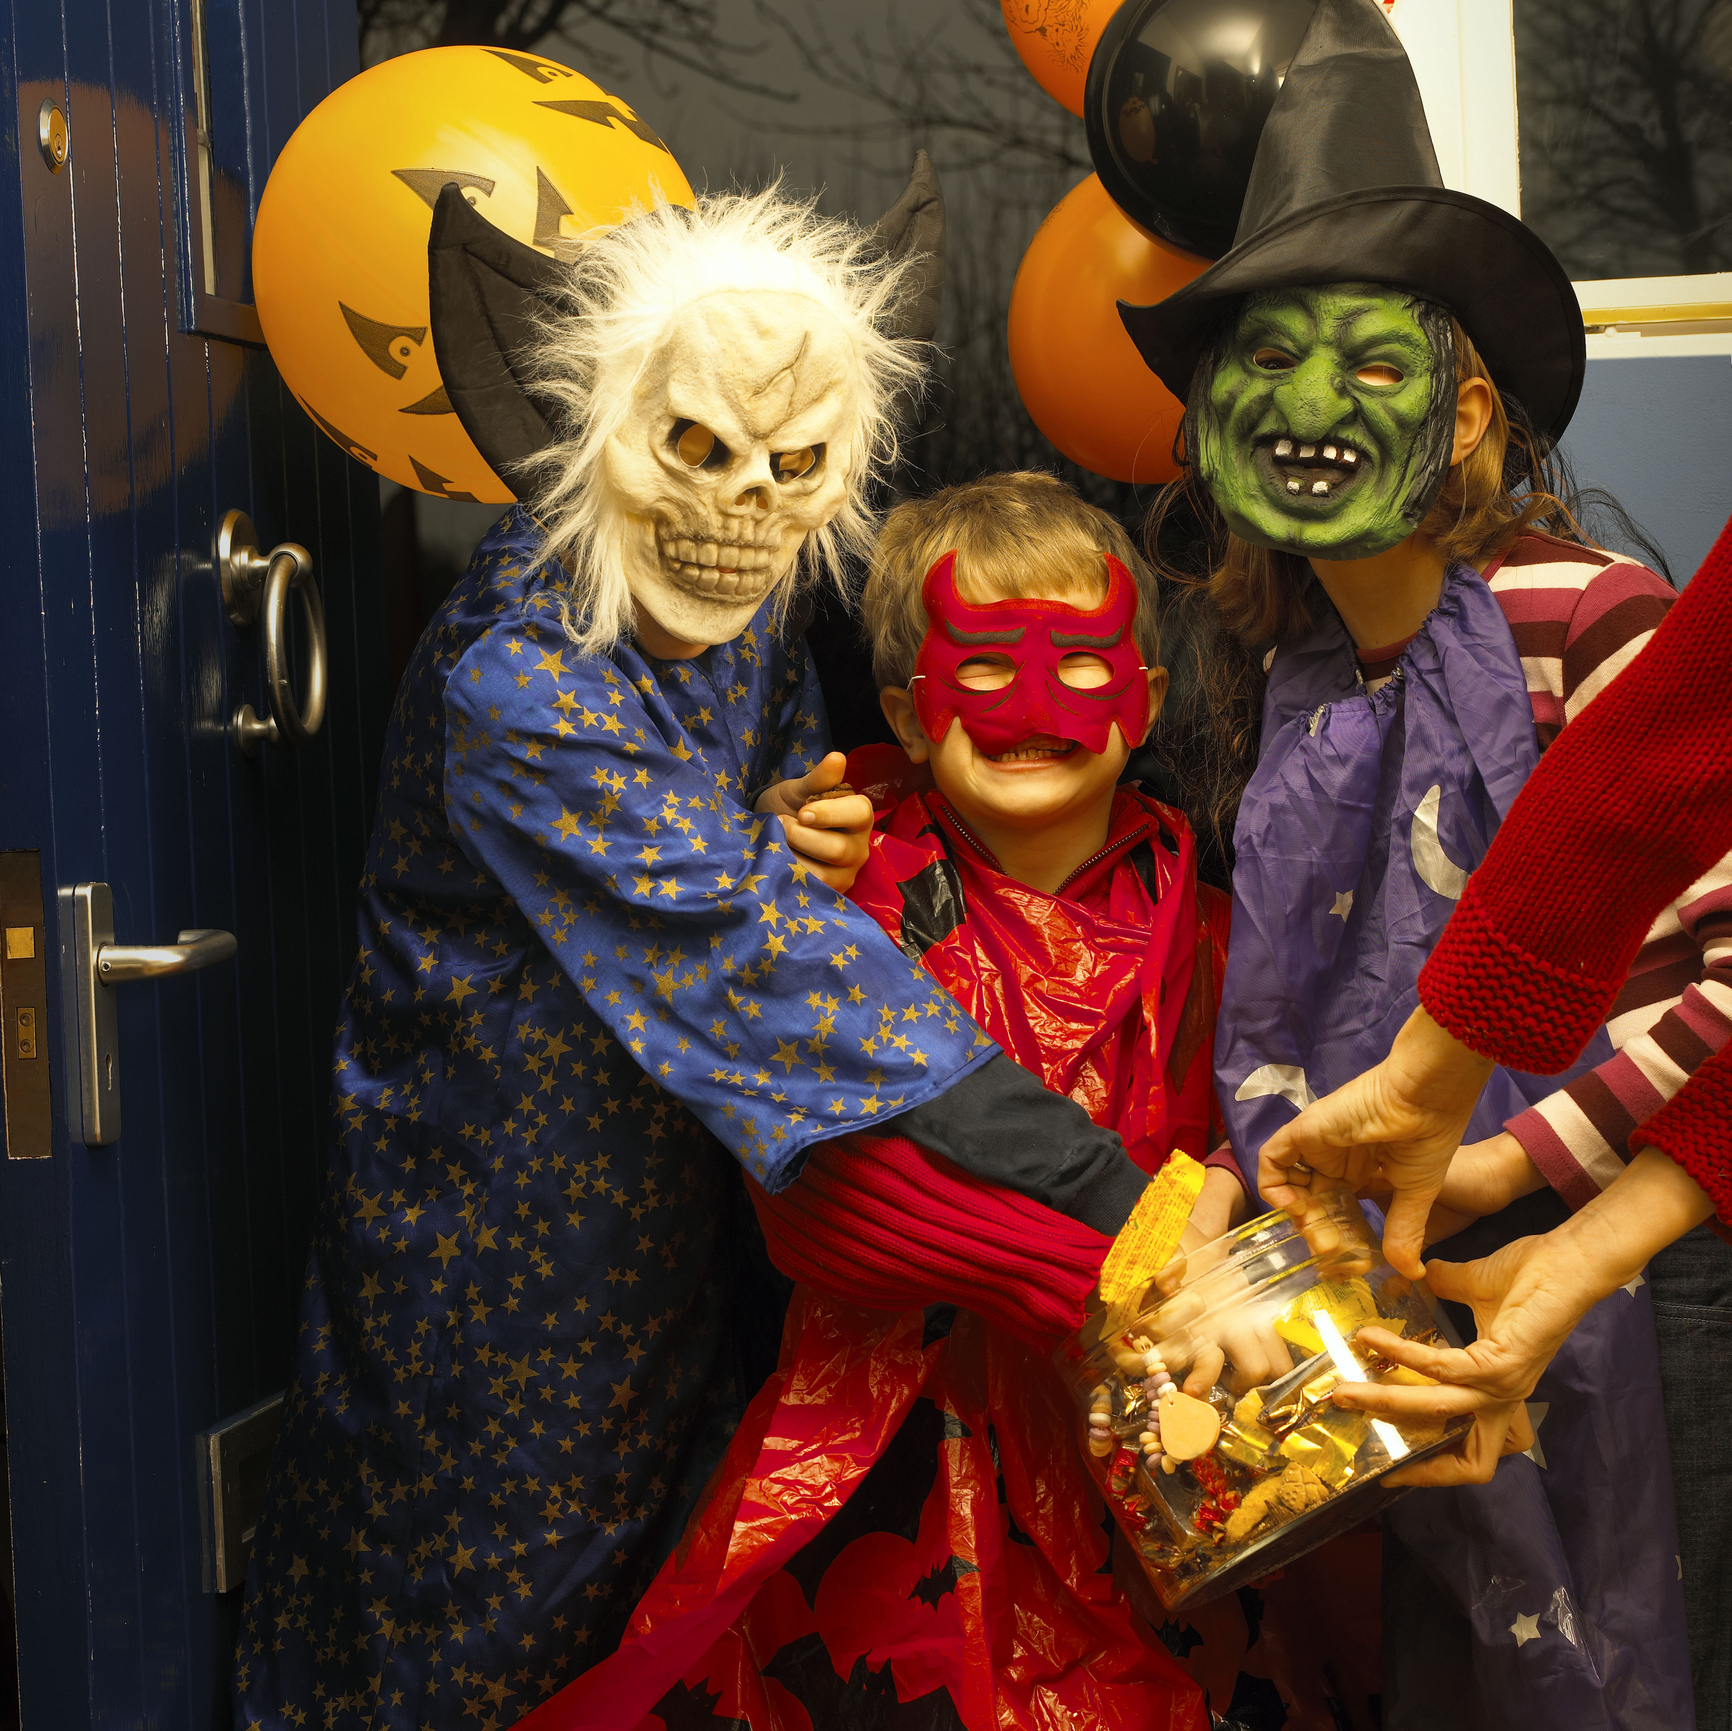 Children in Halloween costumes